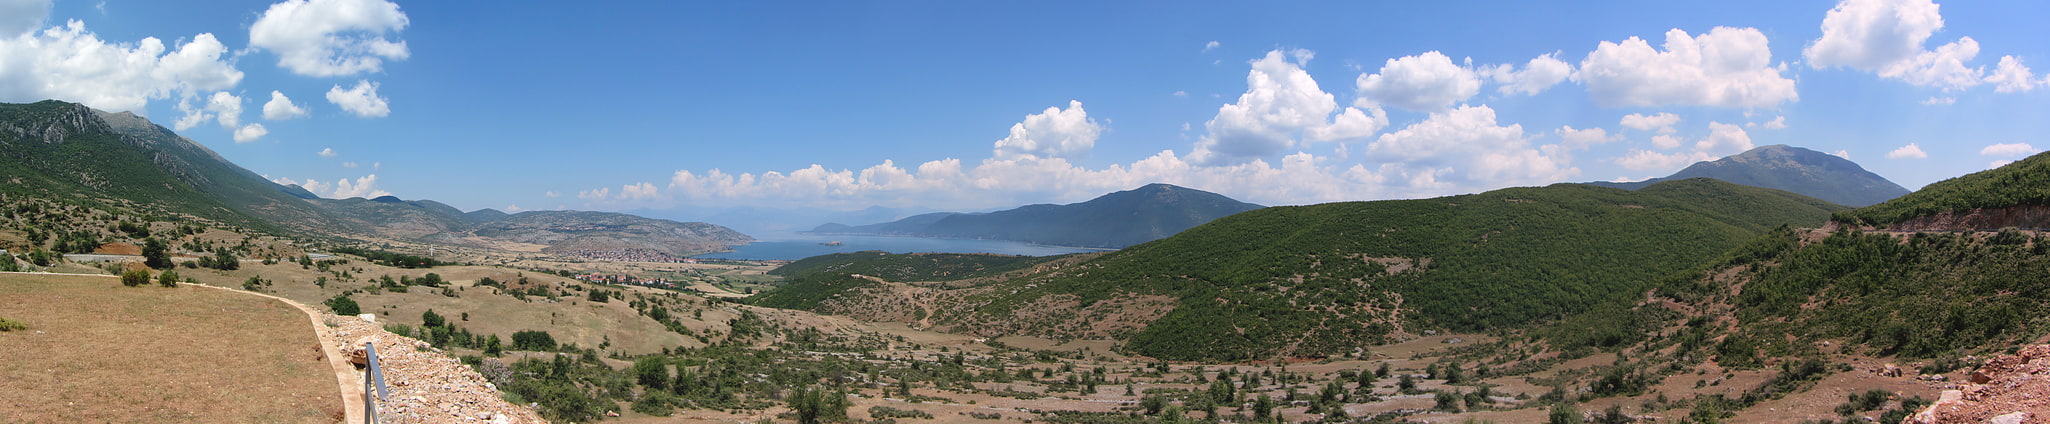 Parque nacional Prespa, Albania